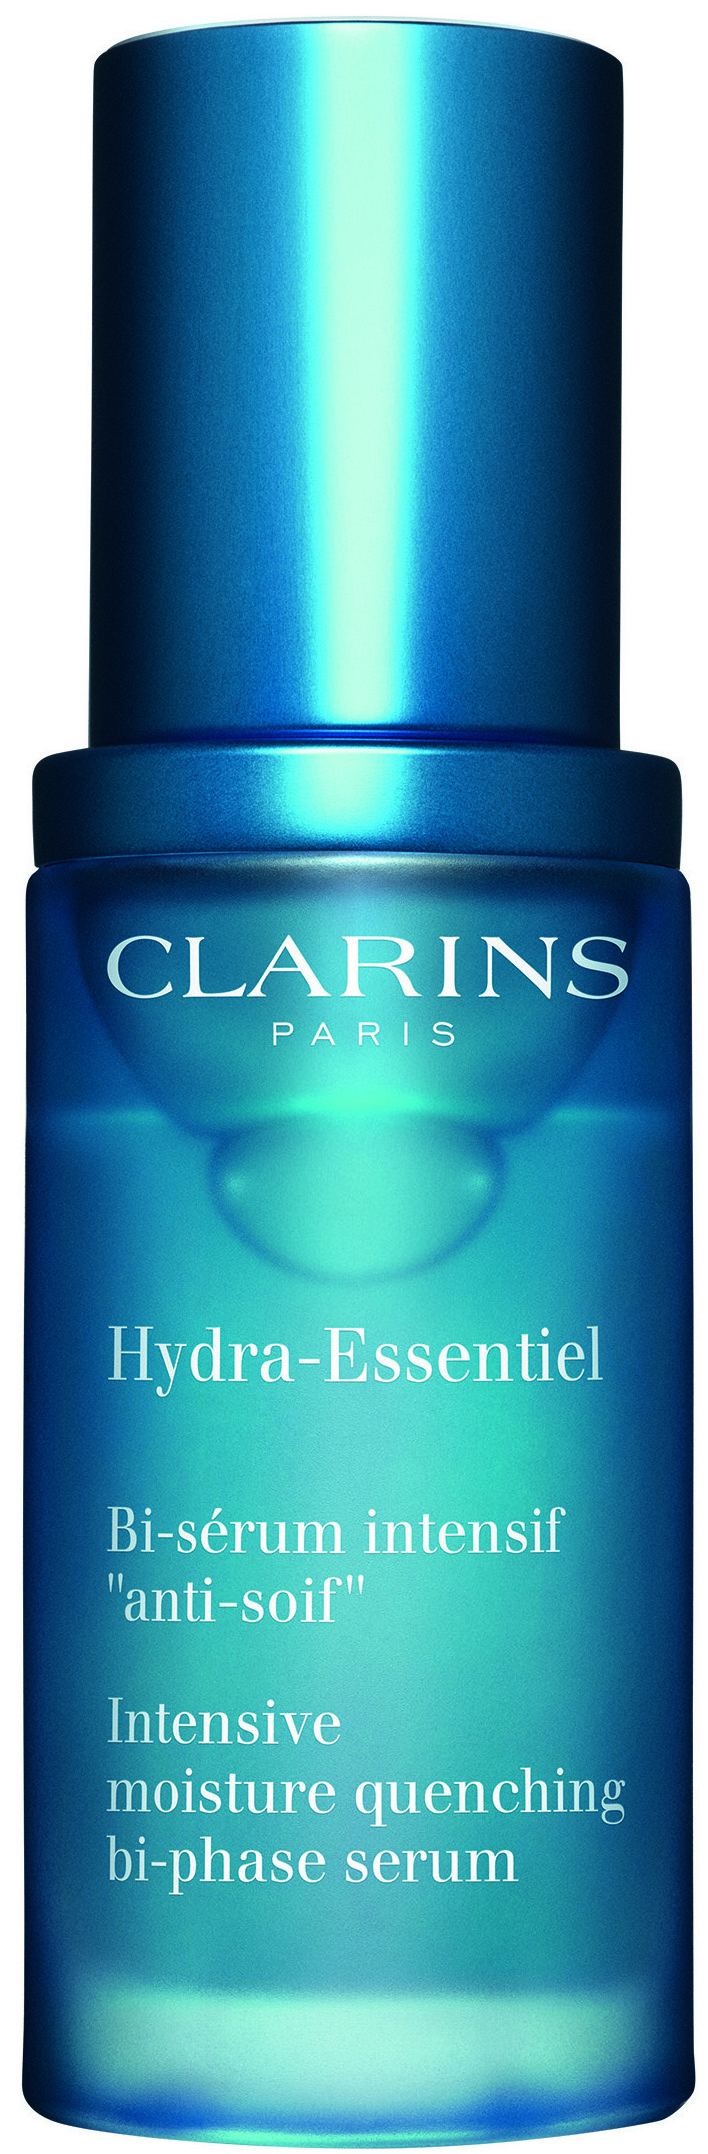 clarins hydra essential